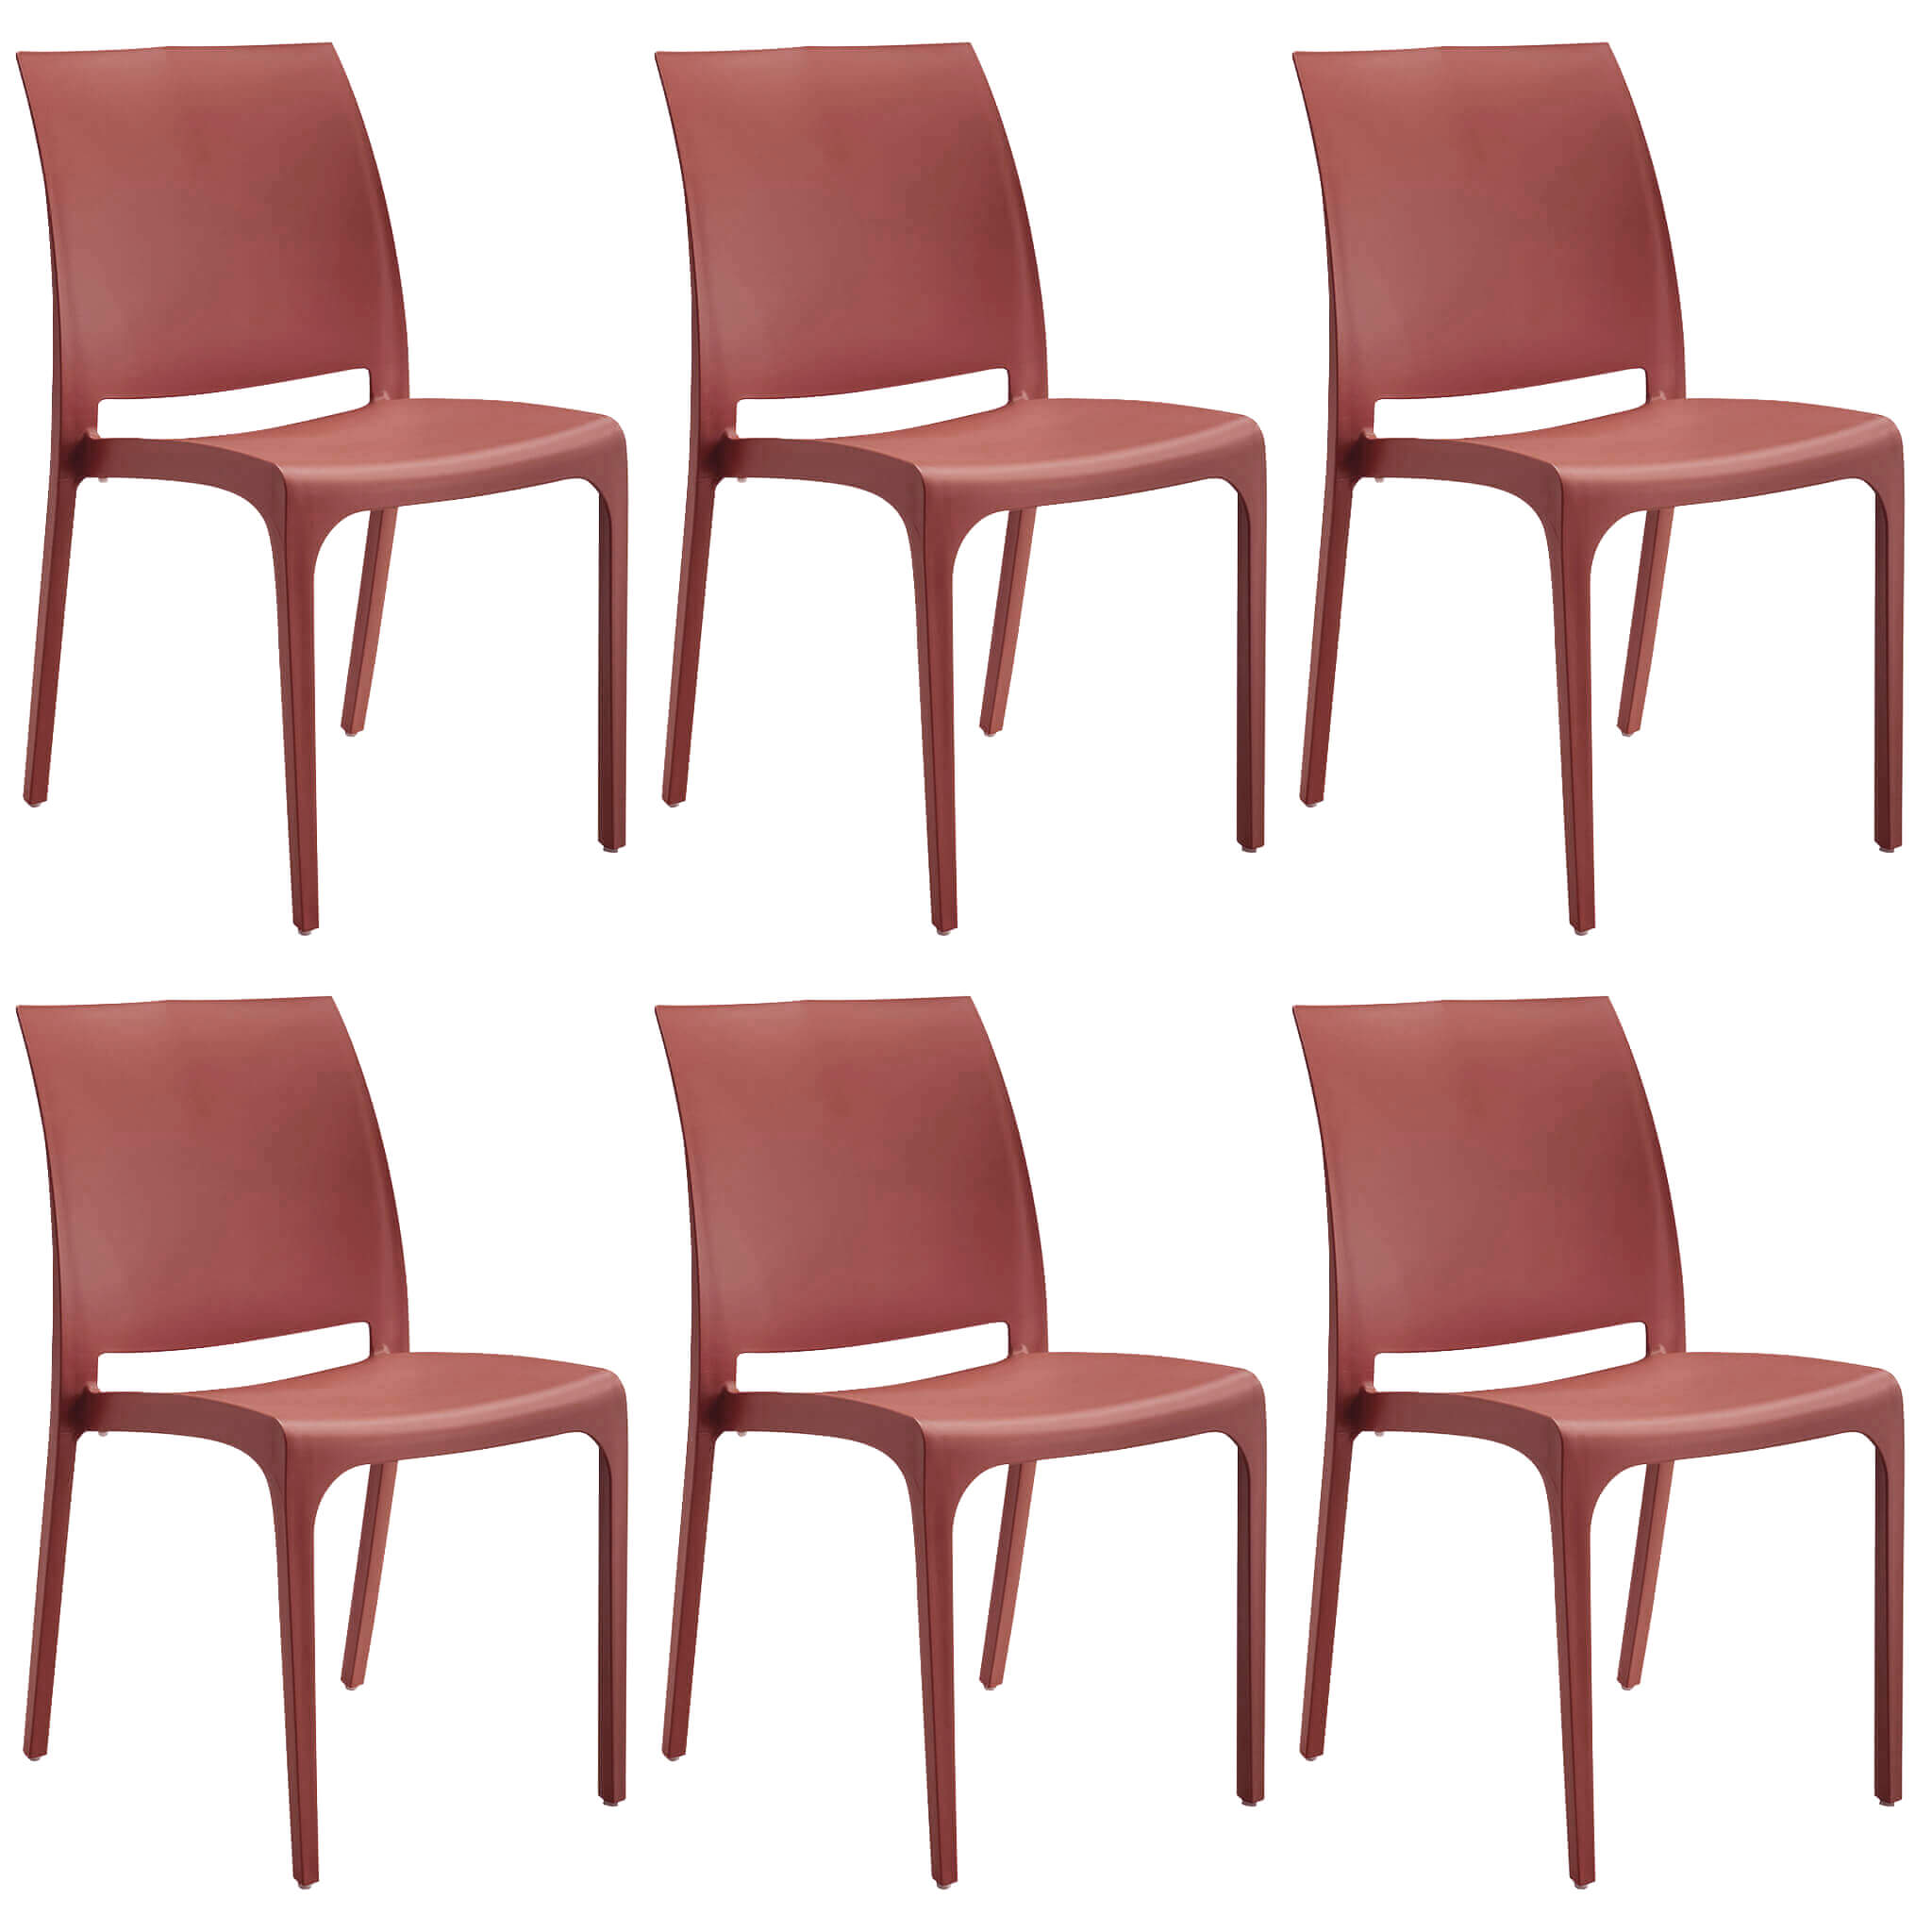 Milani Home set di 6 sedie poltrone da giardino in plastica design moderno colorata Rosso Rosso 46 x 80 x 54 cm